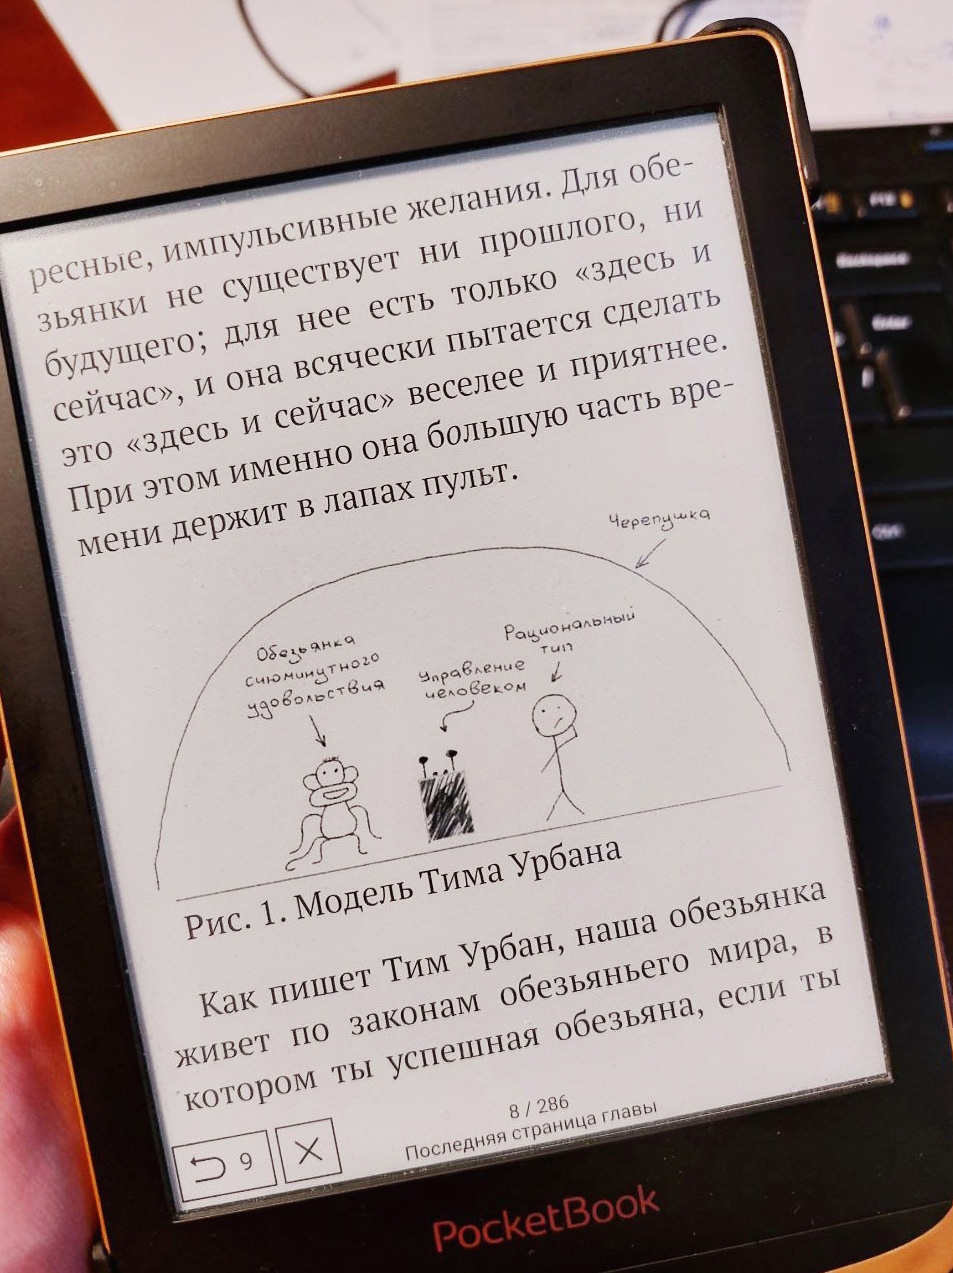 Книга Максима Дорофеева «Джедайские техники».